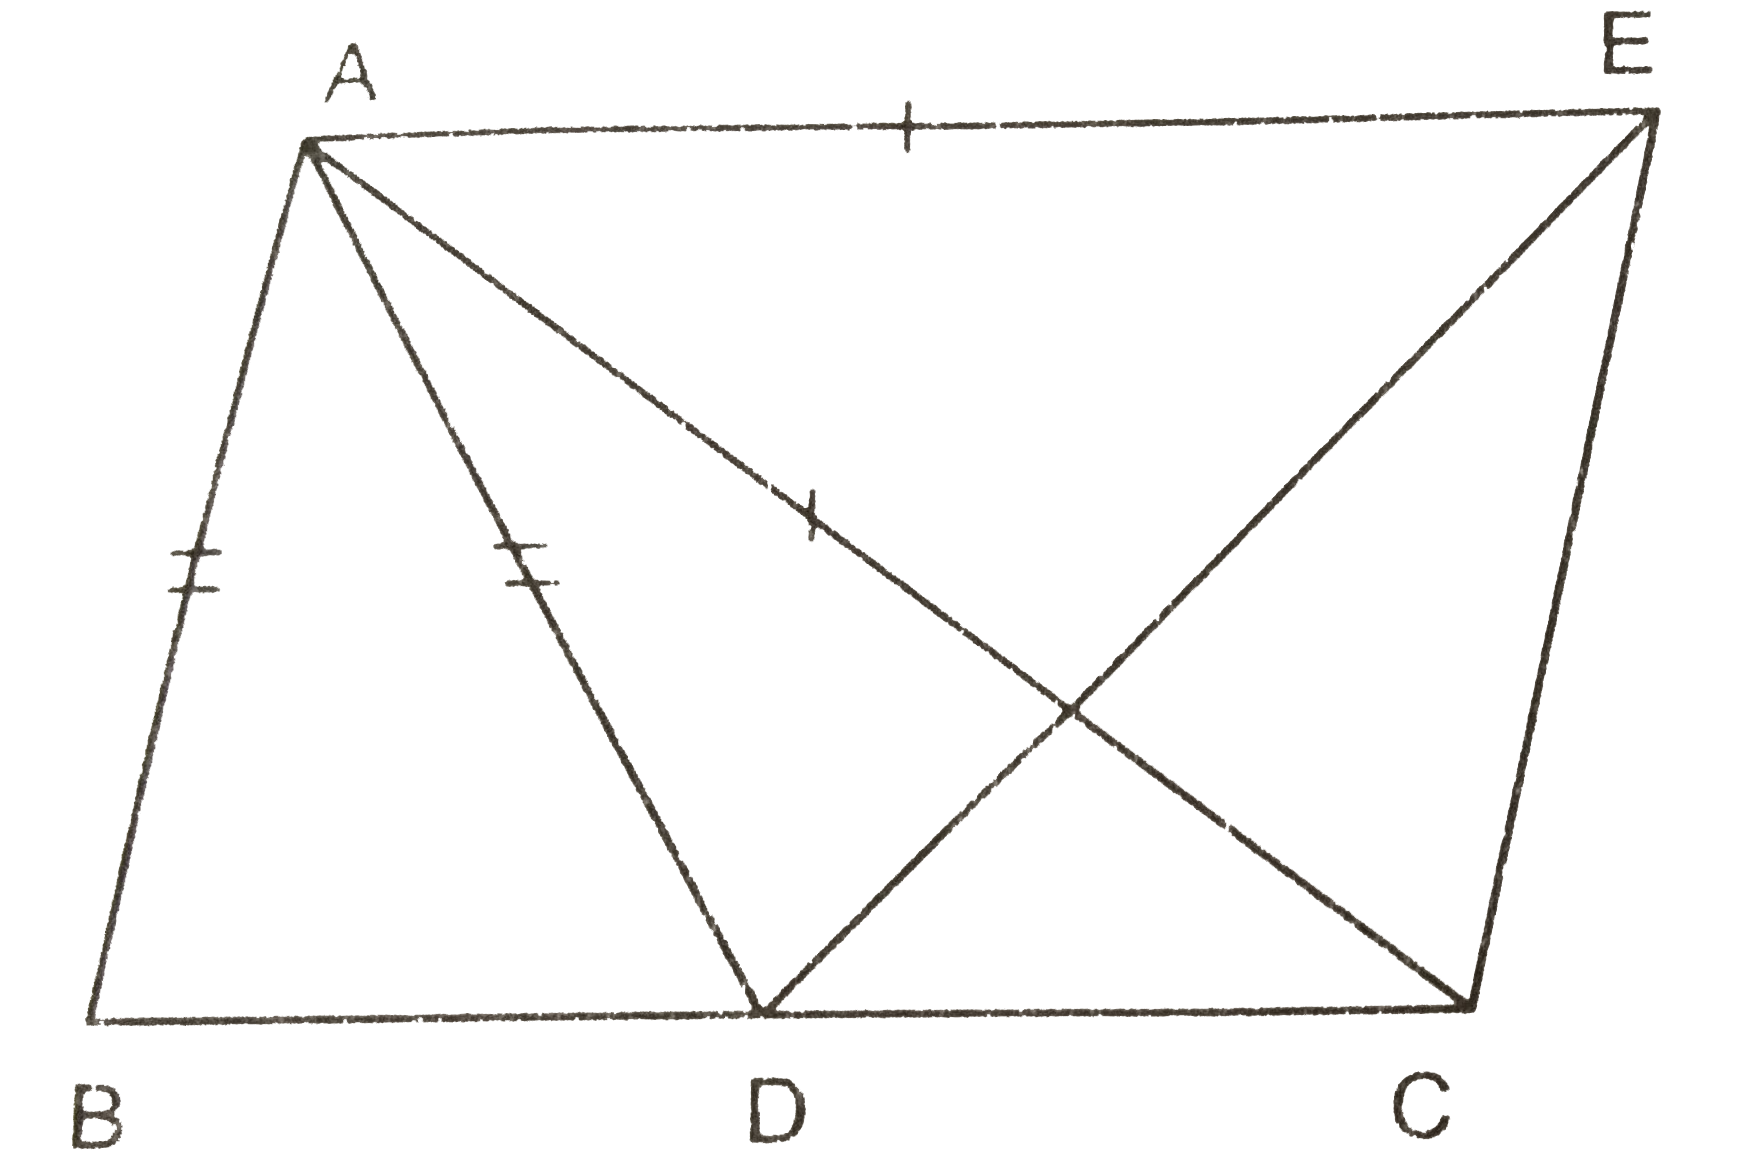 चित्र में, यदि AB =AD, AC = AE  और angle BAD = angle CAE है, तो सिद्ध कीजिए कि BC = DE होगा ।